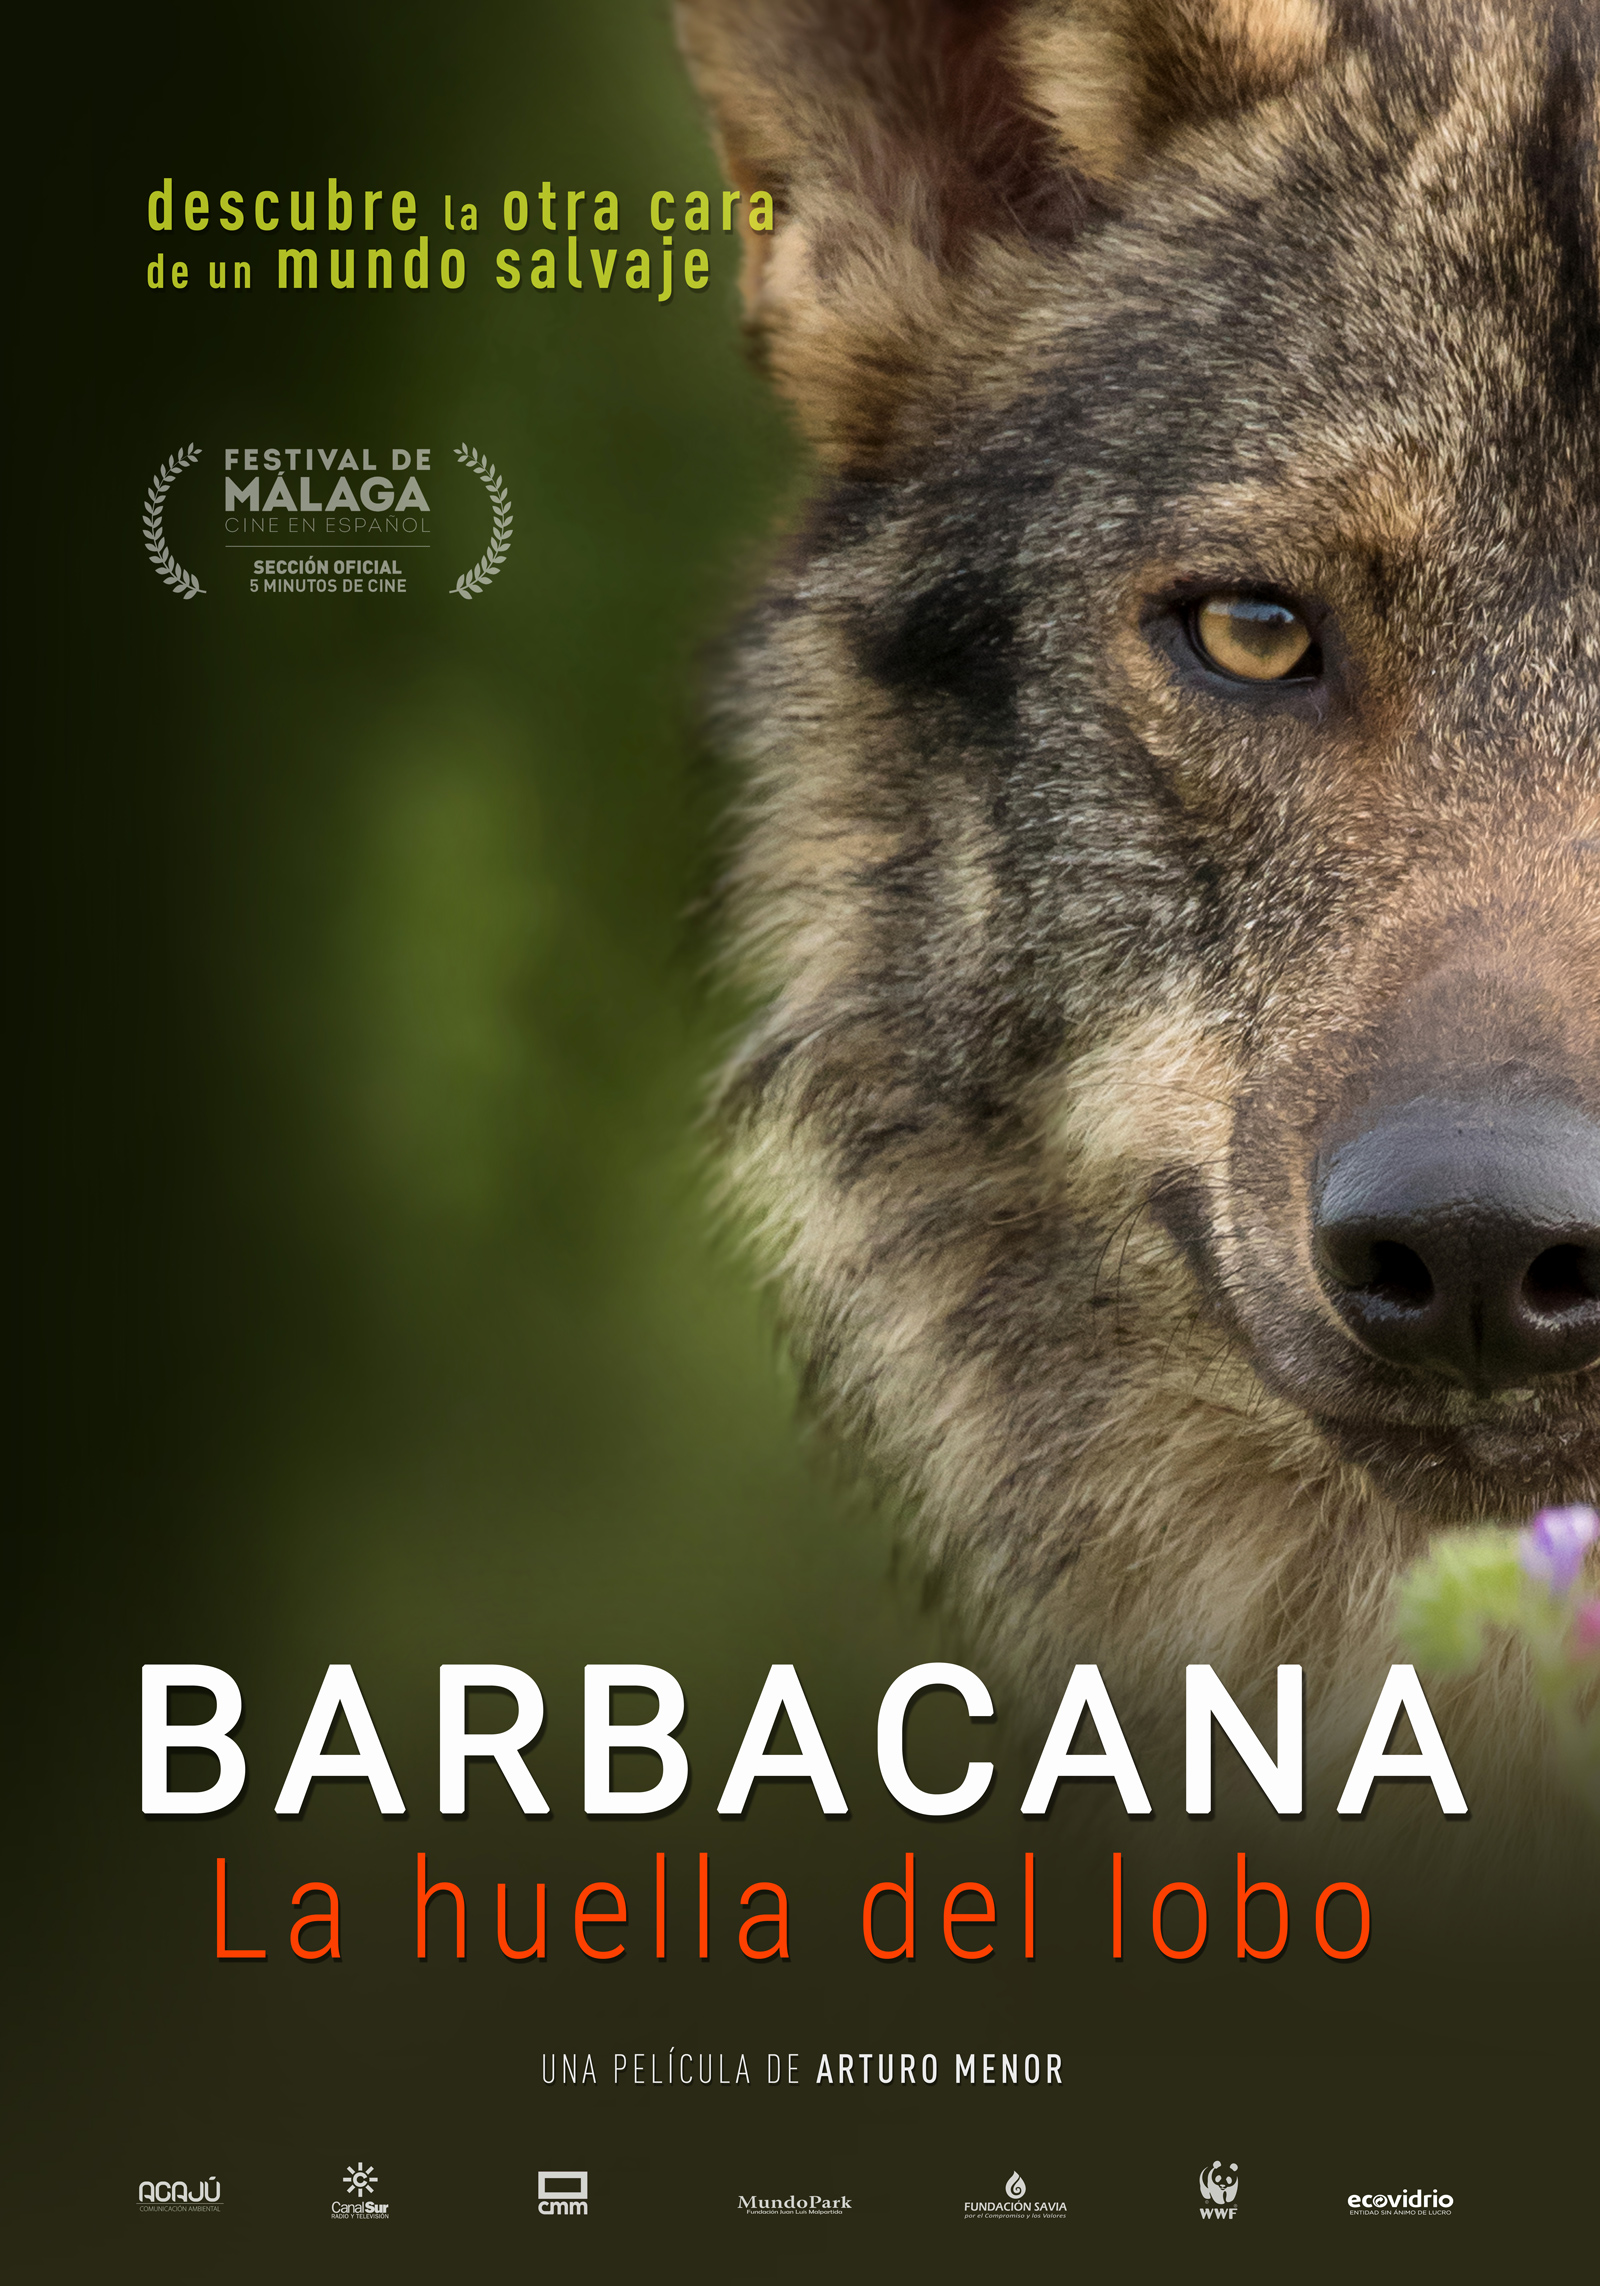 Barbacana la huella del lobo película Arturo Menor prevención ataques lobos Cartel